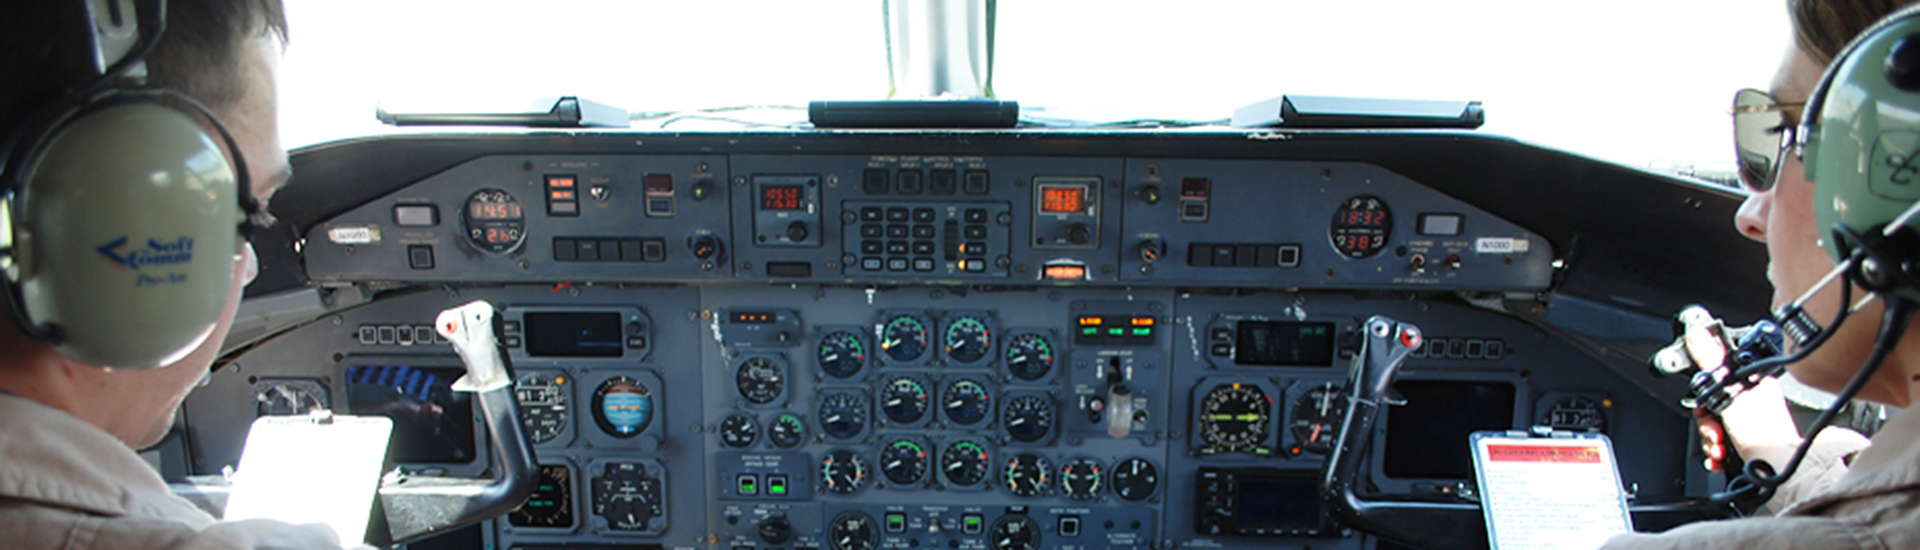 DHC-8 cockpit